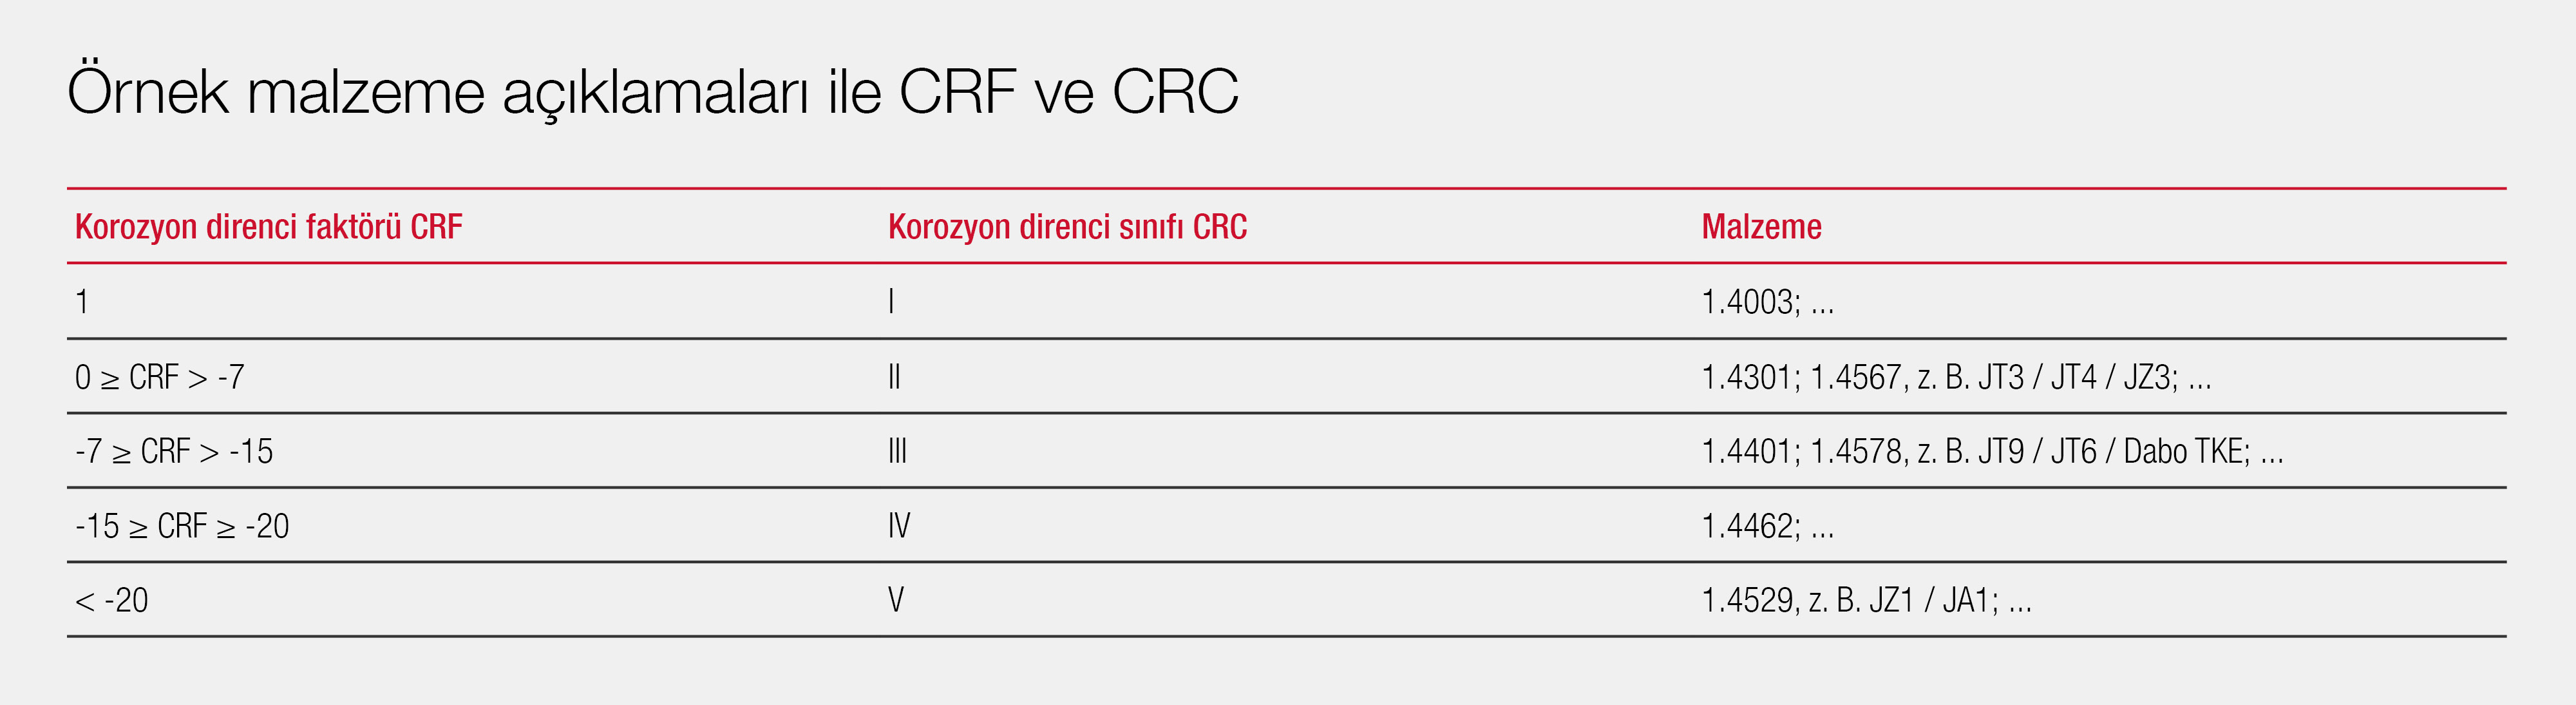 örnek malzeme tanımlamaları ile CRF ve CRC